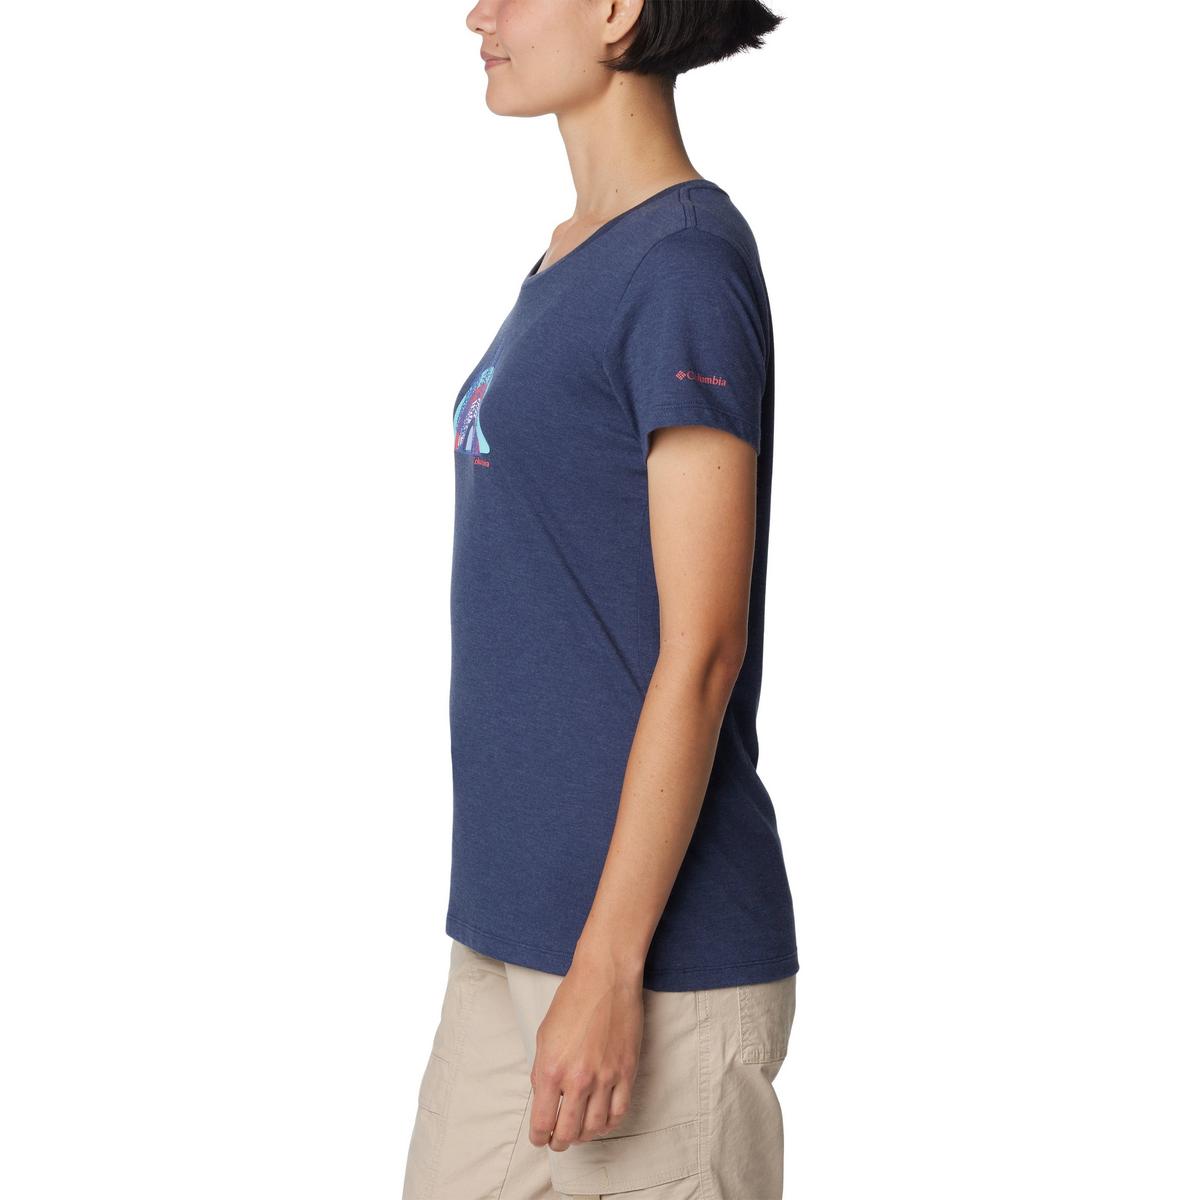 Columbia Women's Daisy Days Graphic T-Shirt - Dark Blue